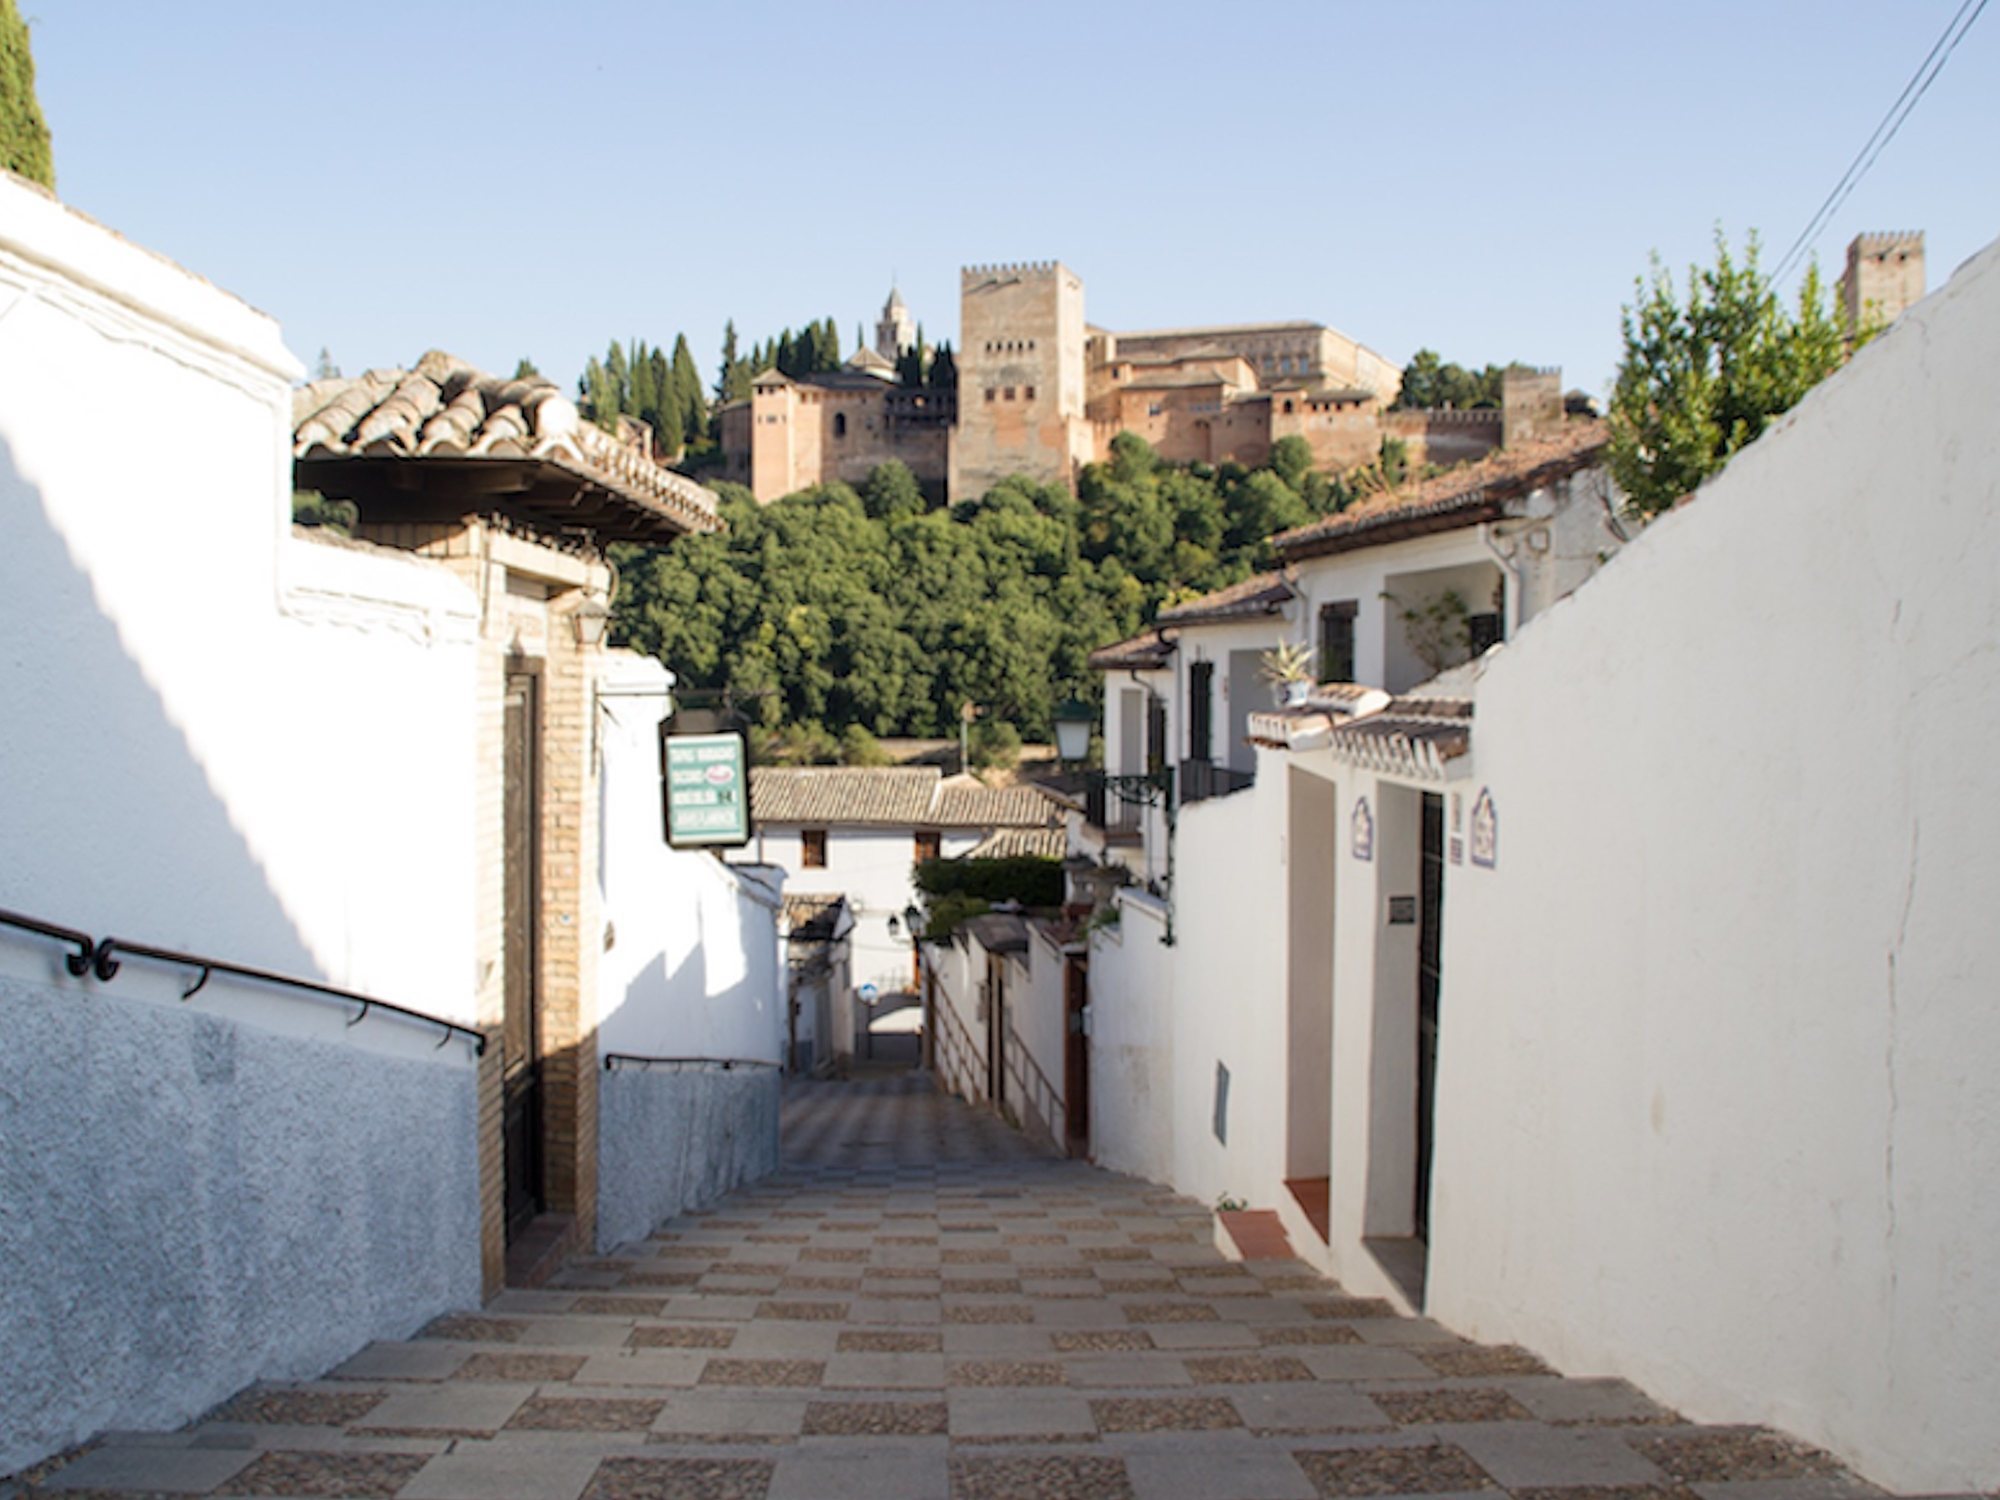 Las 12 calles más bonitas de España que no te puedes perder - Los